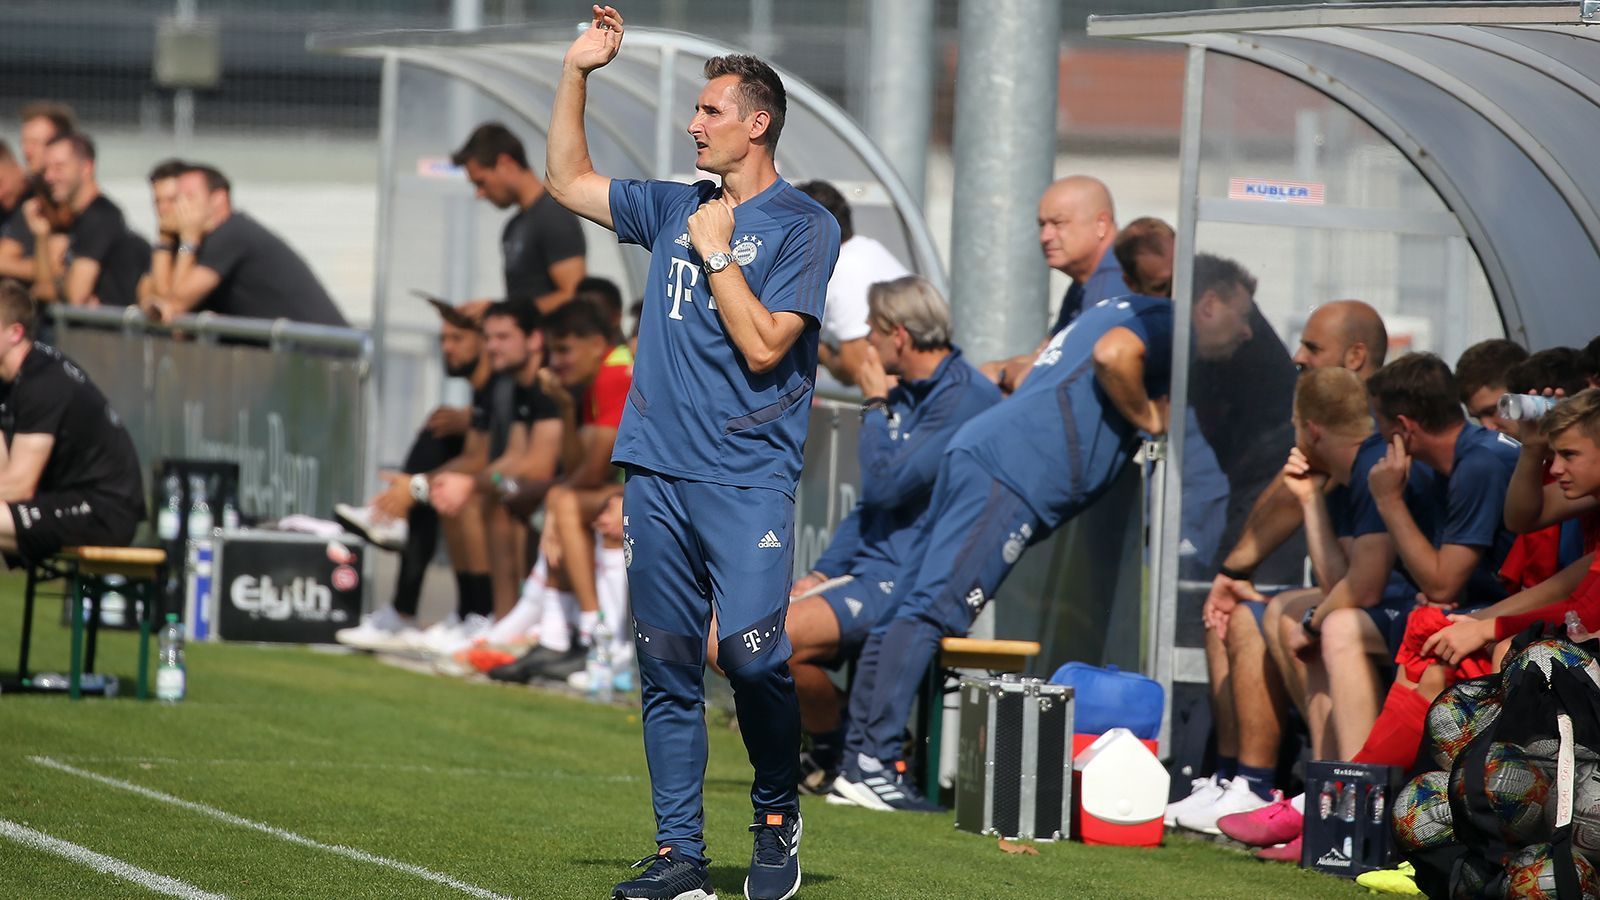 
                <strong>Miroslav Klose geht von der U17 zu den Profis</strong><br>
                Seit Sommer 2018 coachte Miroslav Klose die U17 des Rekordmeisters. Die Bilanz: 49 Spiele, davon 35 Siege. Vorher assistierte der WM-Rekordtorschütze als Assistenztrainer bei der Nationalmannschaft und auch beim FC Bayern. Jetzt holt ihn Hansi Flick zu den Profis. Dort wird Klose ab der neuen Saison Co-Trainer sein. Da kann sich wohl auch Robert Lewandowski noch etwas abschauen.
              